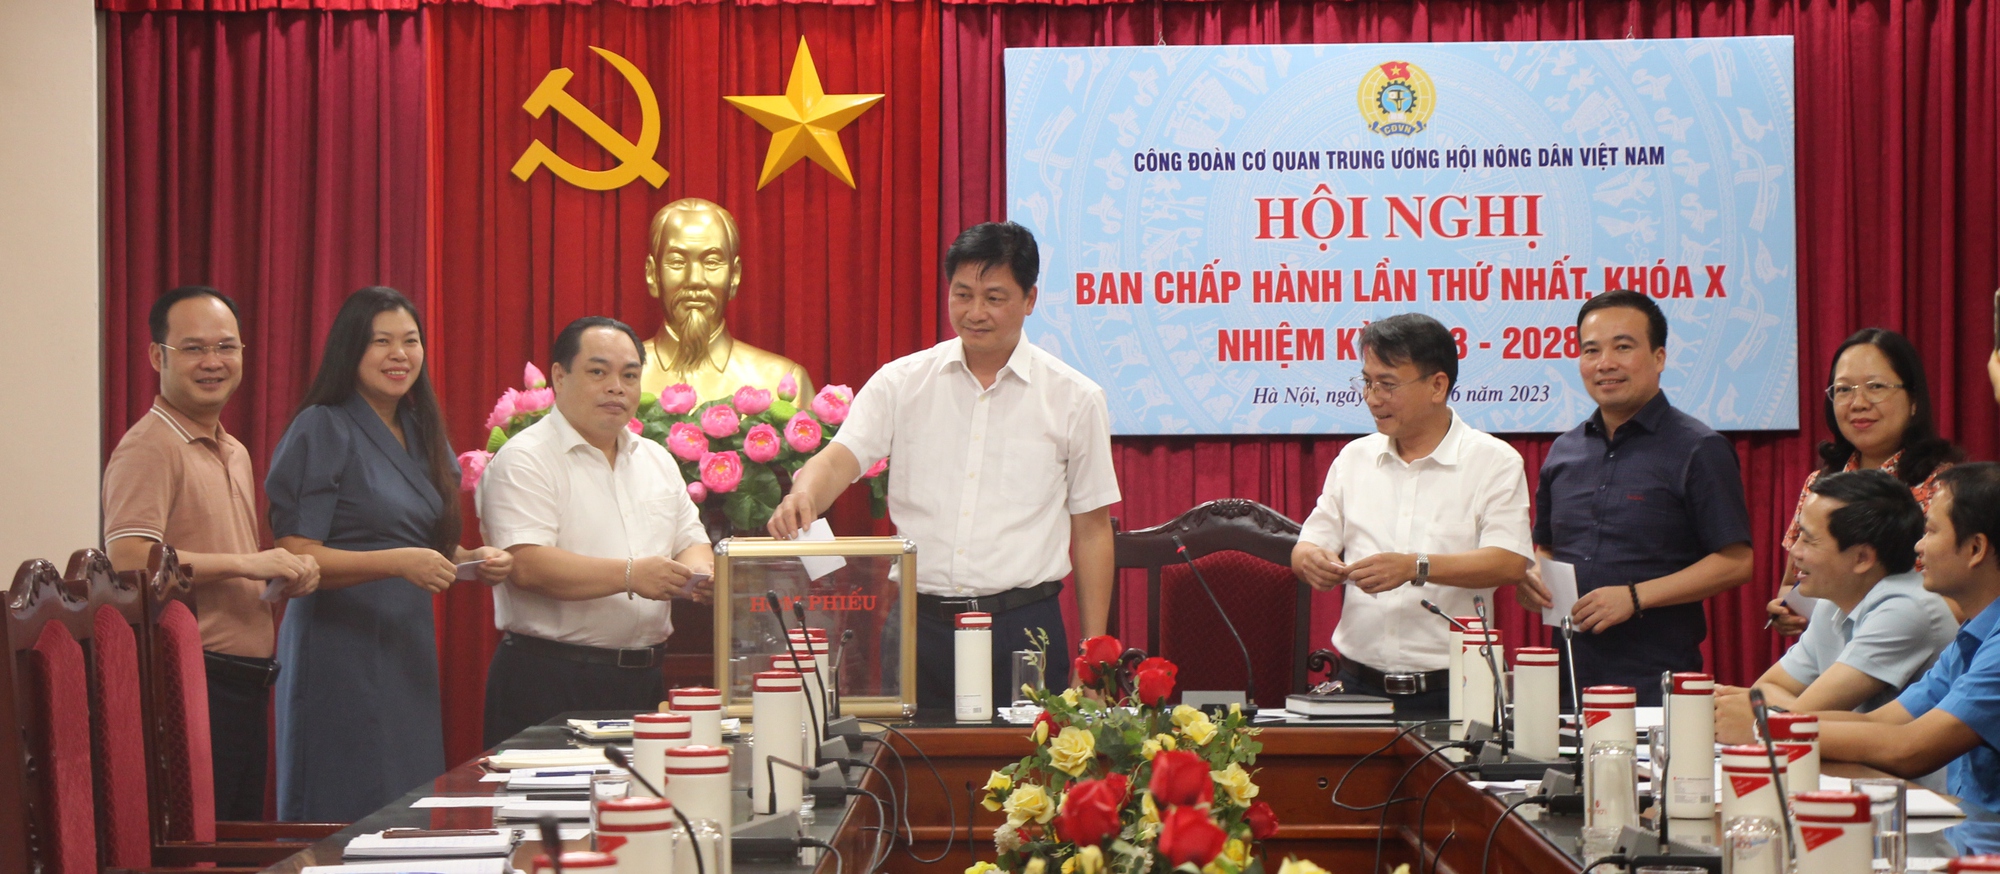 Ông Vũ Quốc Huy được bầu làm Chủ tịch Công đoàn cơ quan Trung ương Hội Nông dân Việt Nam - Ảnh 1.